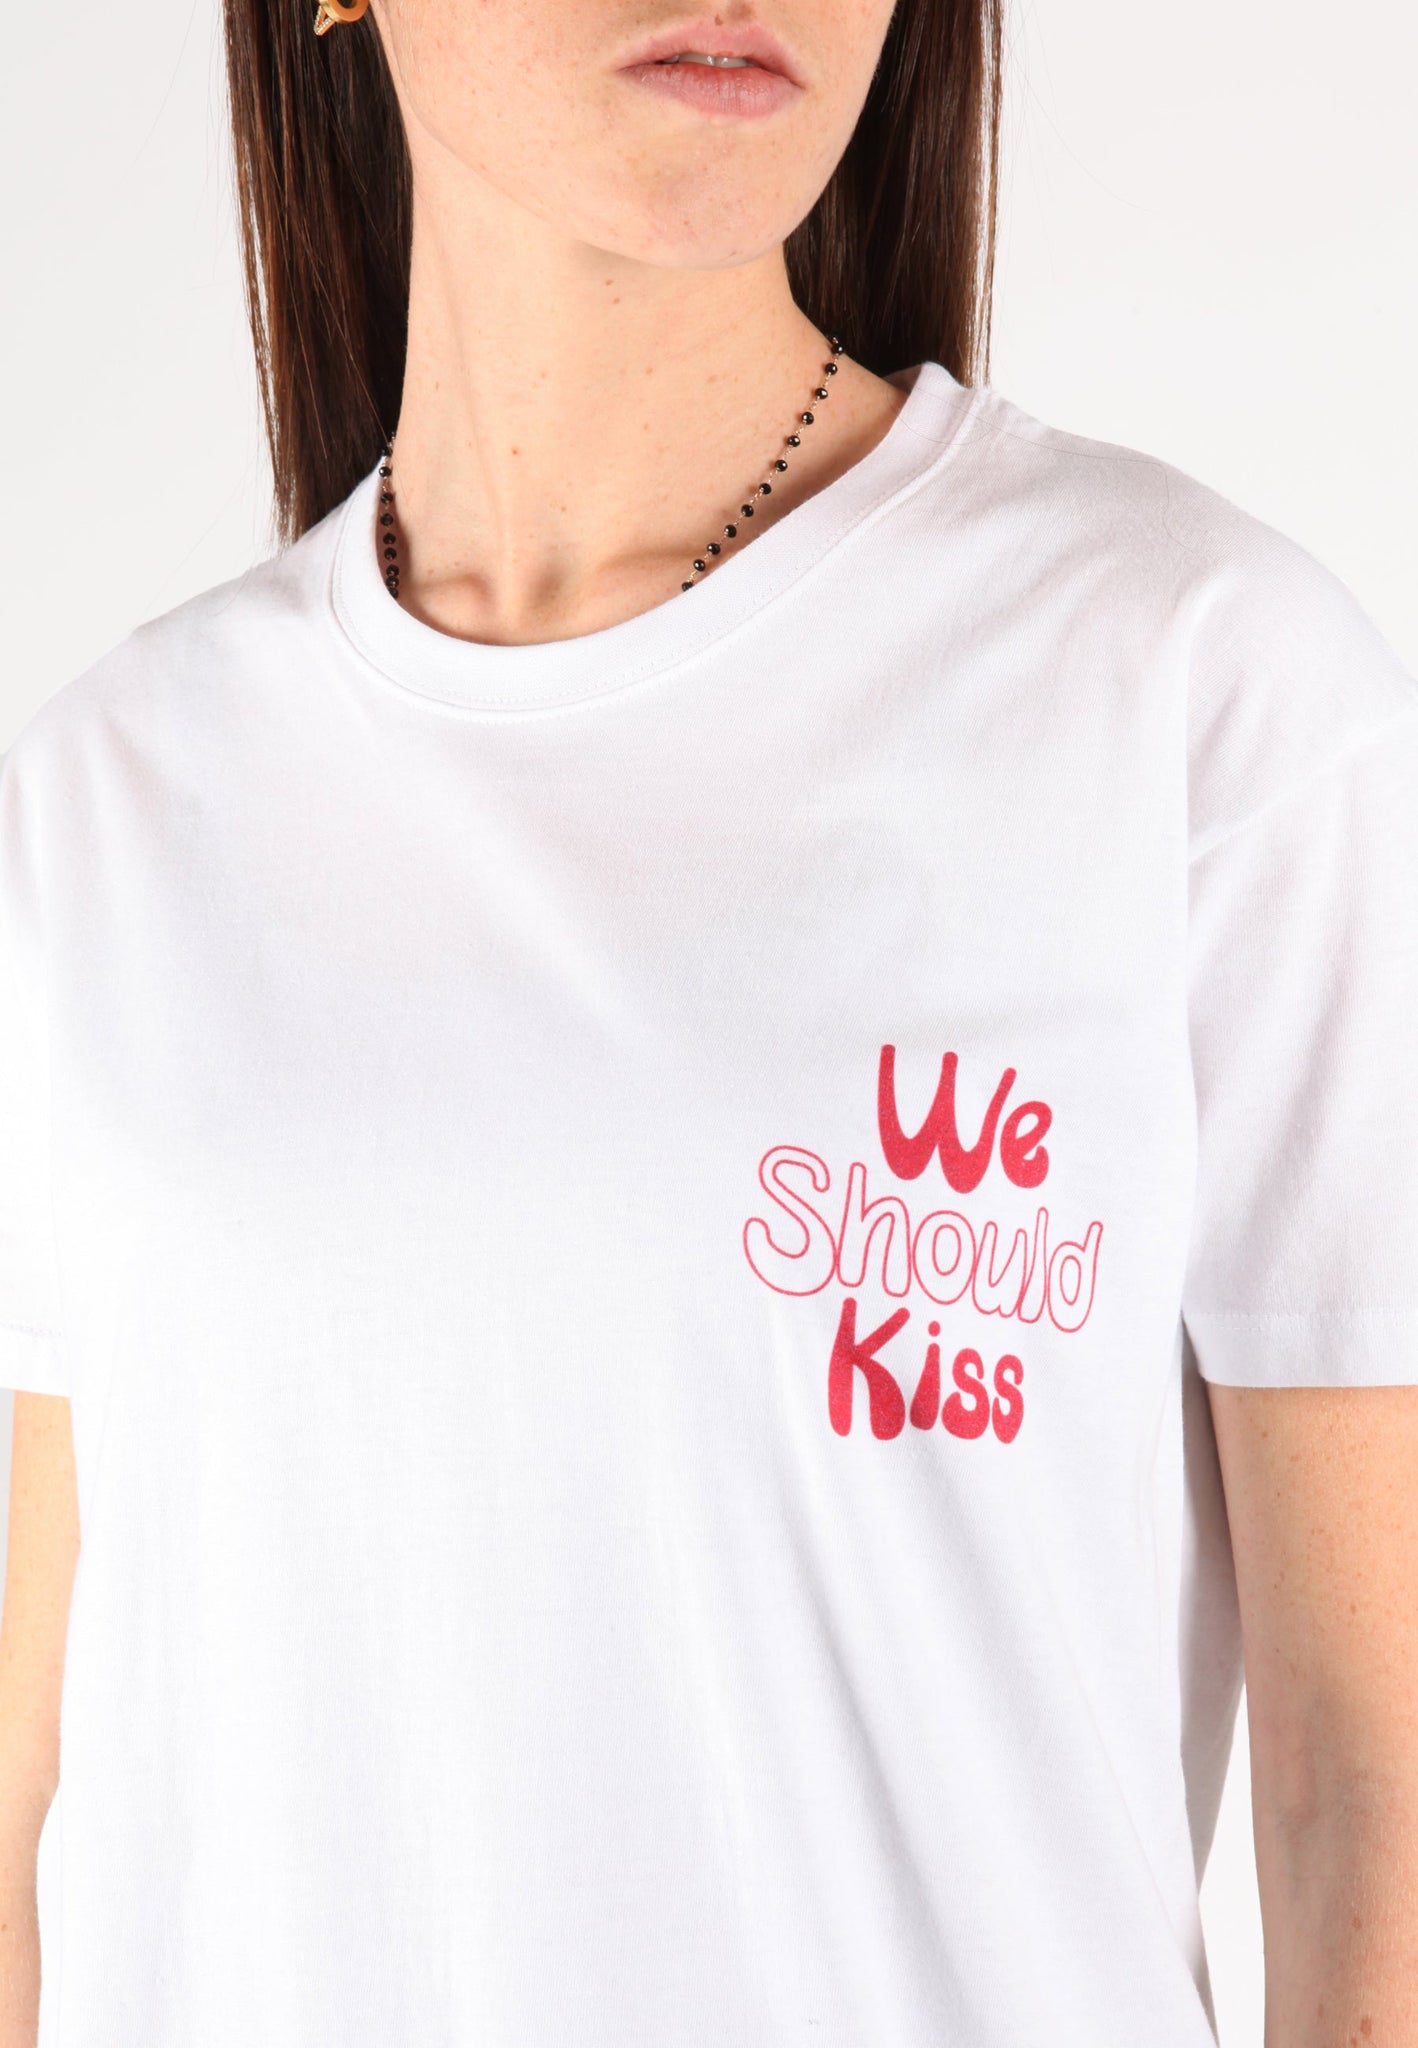 Camiseta Donna "Deberíamos besarnos" 